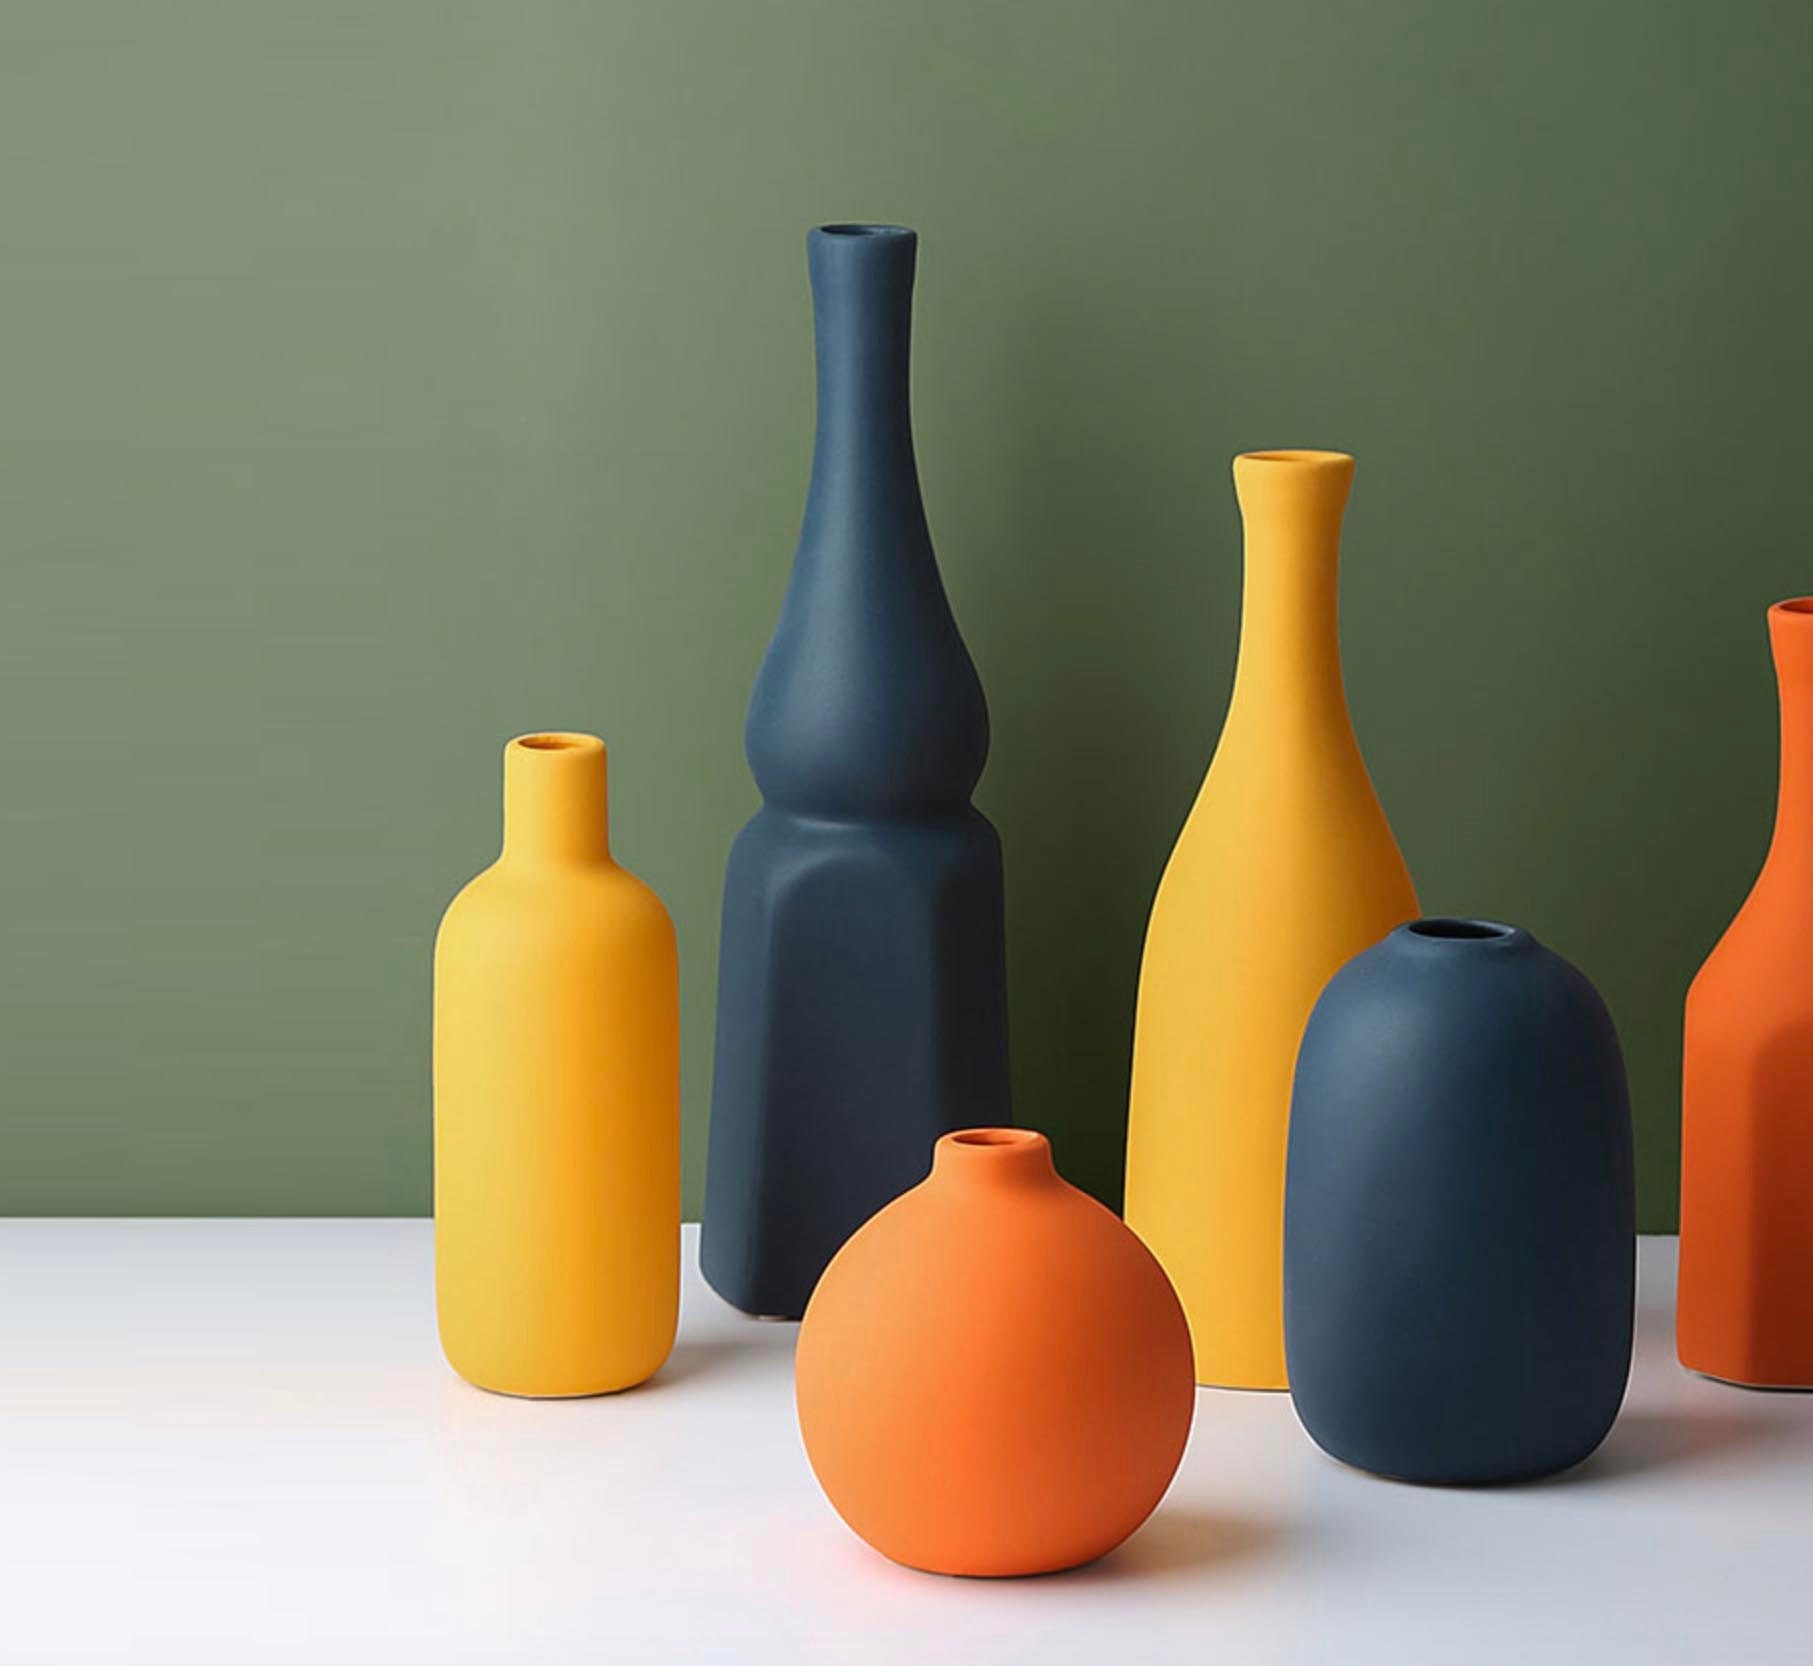 Morandi modern glossy vase / Handmade Ceramic Vase / | Etsy